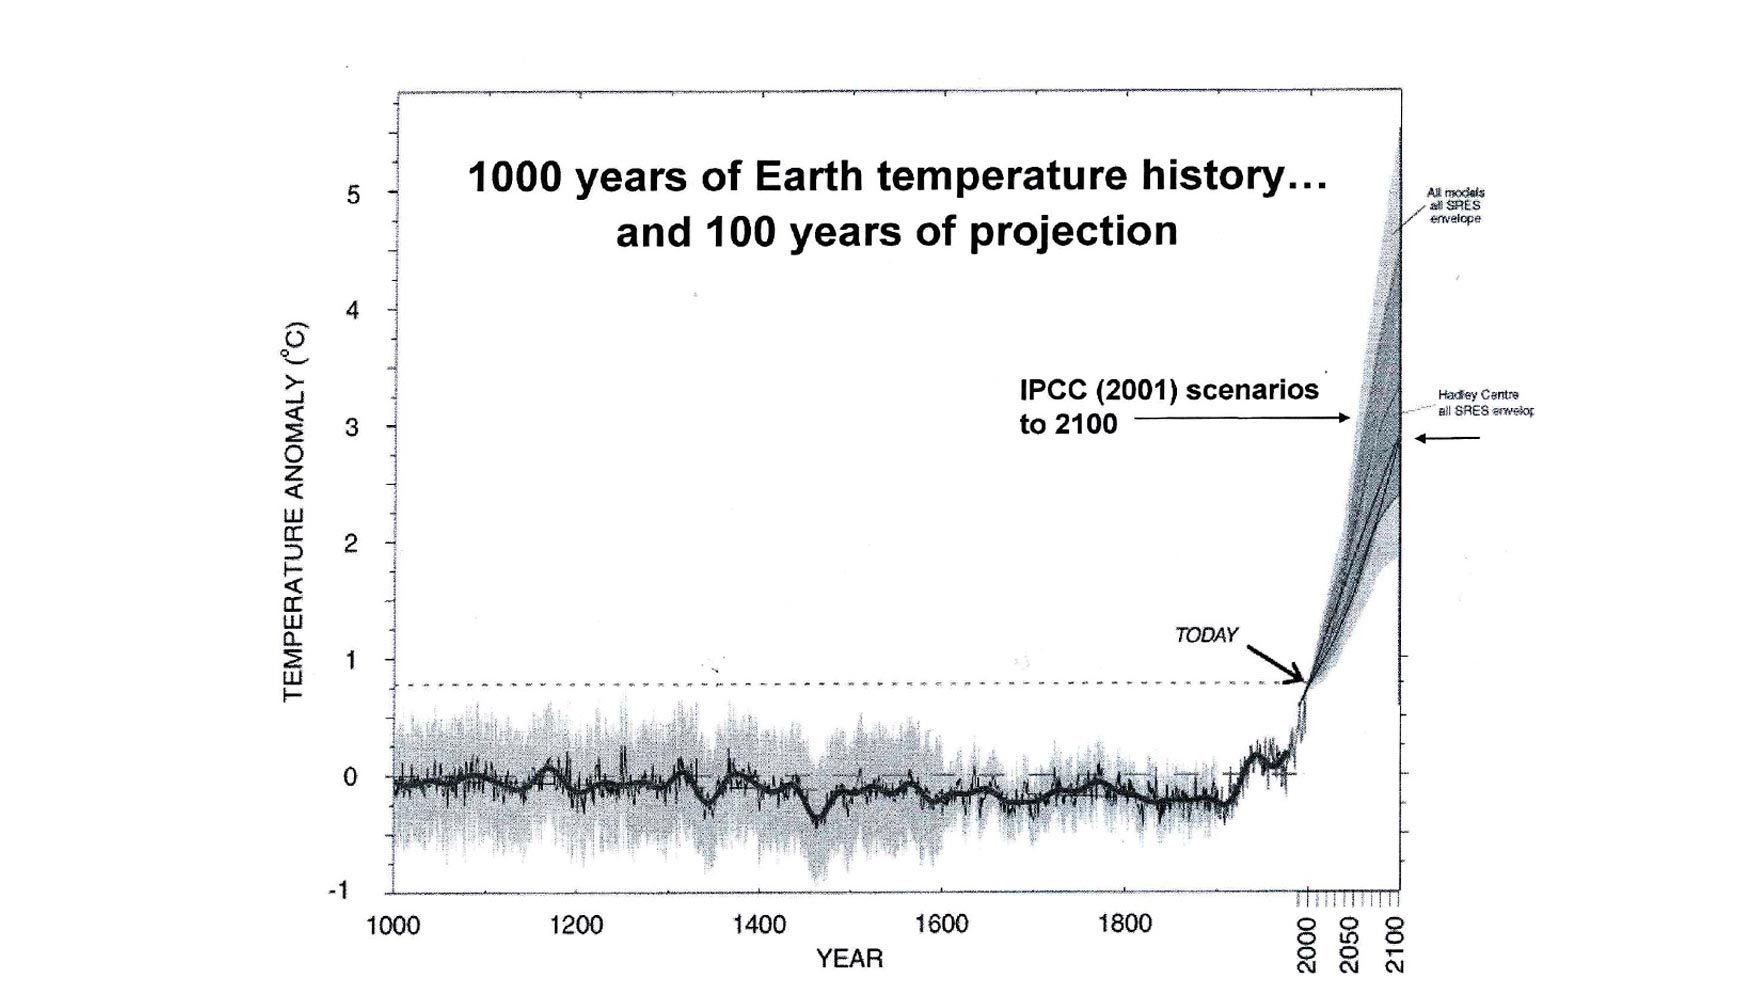 IPCC Escenario en el ao 2001. 1.000 aos de temperatura terrestre, y 100 aos de proyeccin...